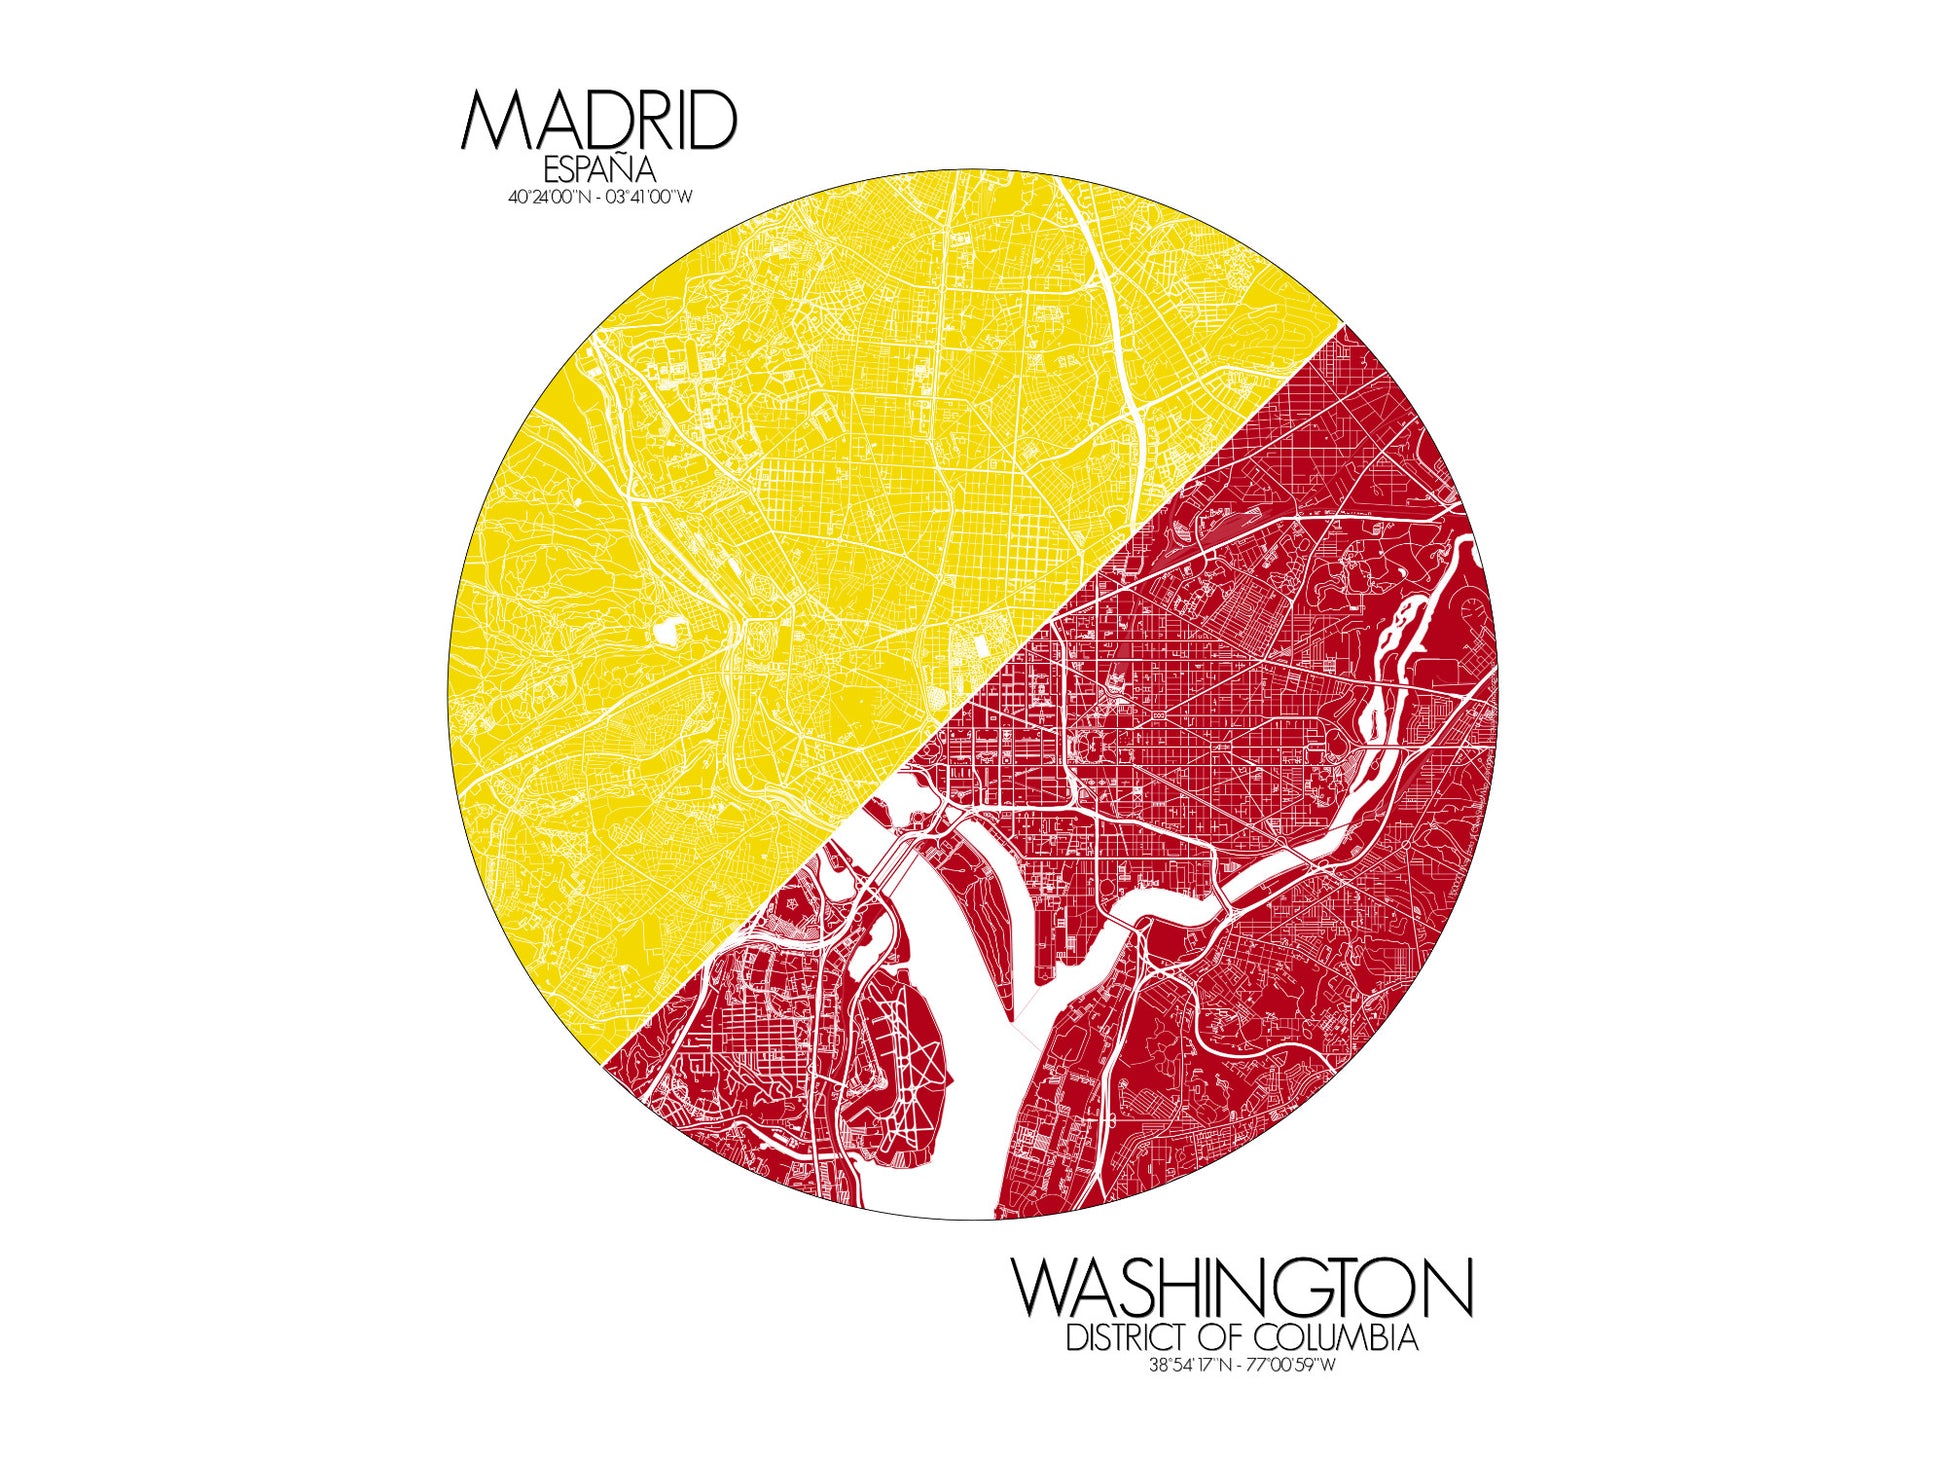 Madrid Washington Love Maps mapospheres